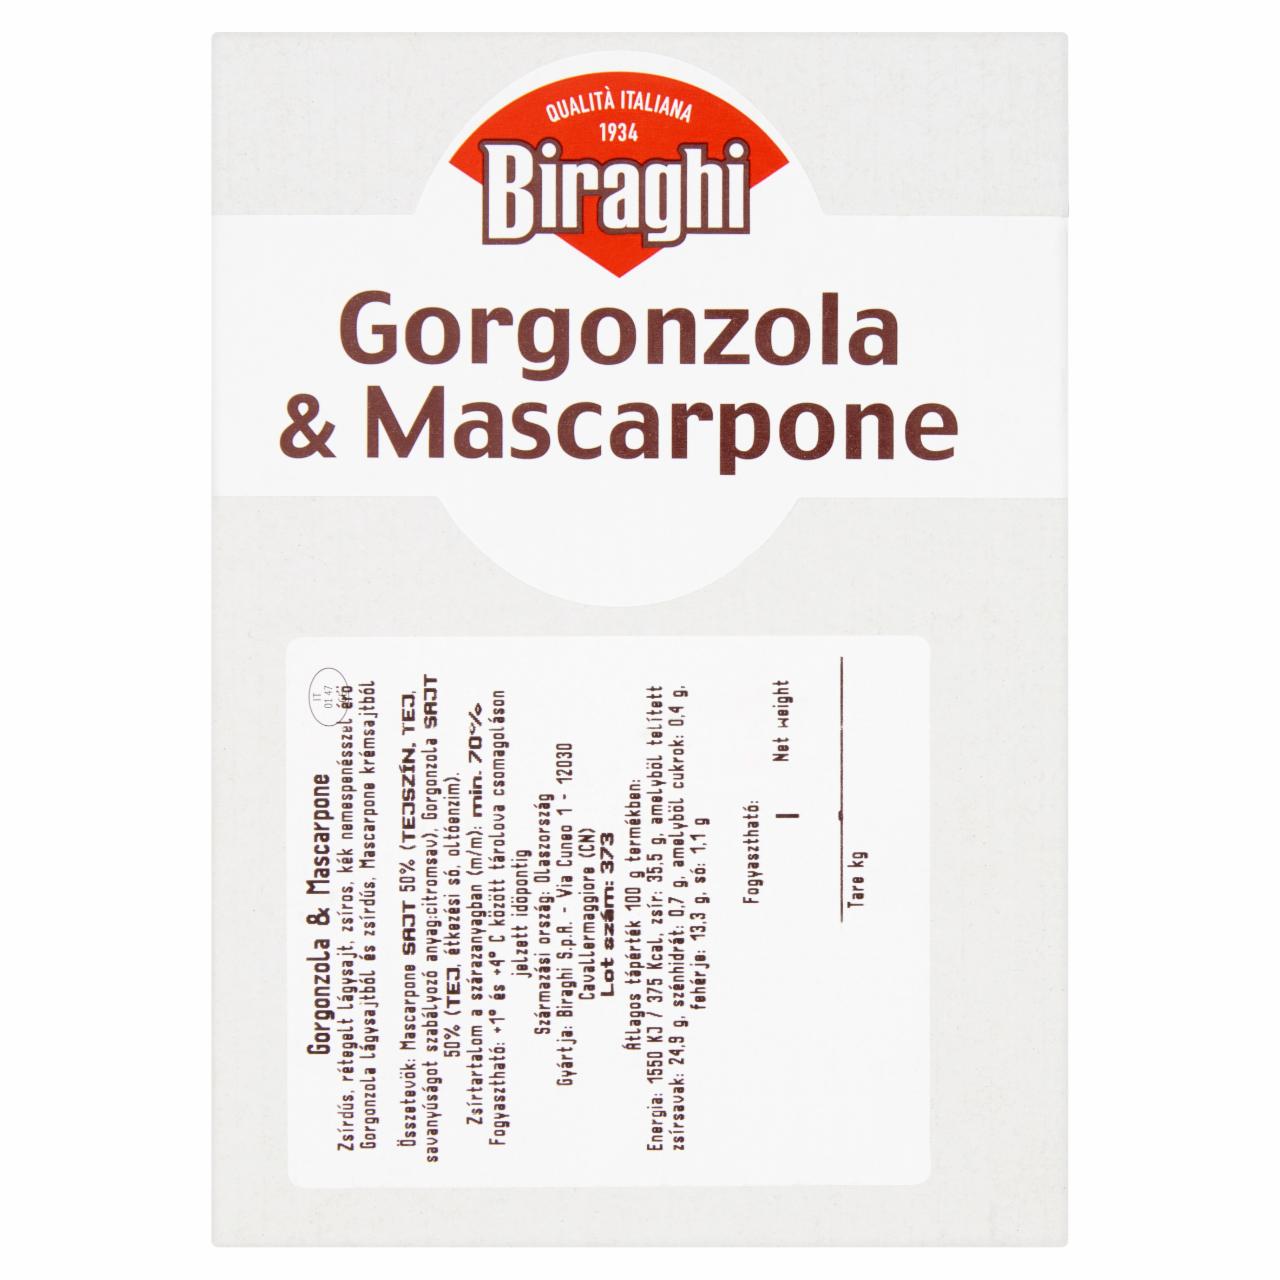 Képek - Biraghi zsírdús lágysajt kék nemespenésszel érő Gorgonzola lágysajtból és Mascarpone krémsajtból